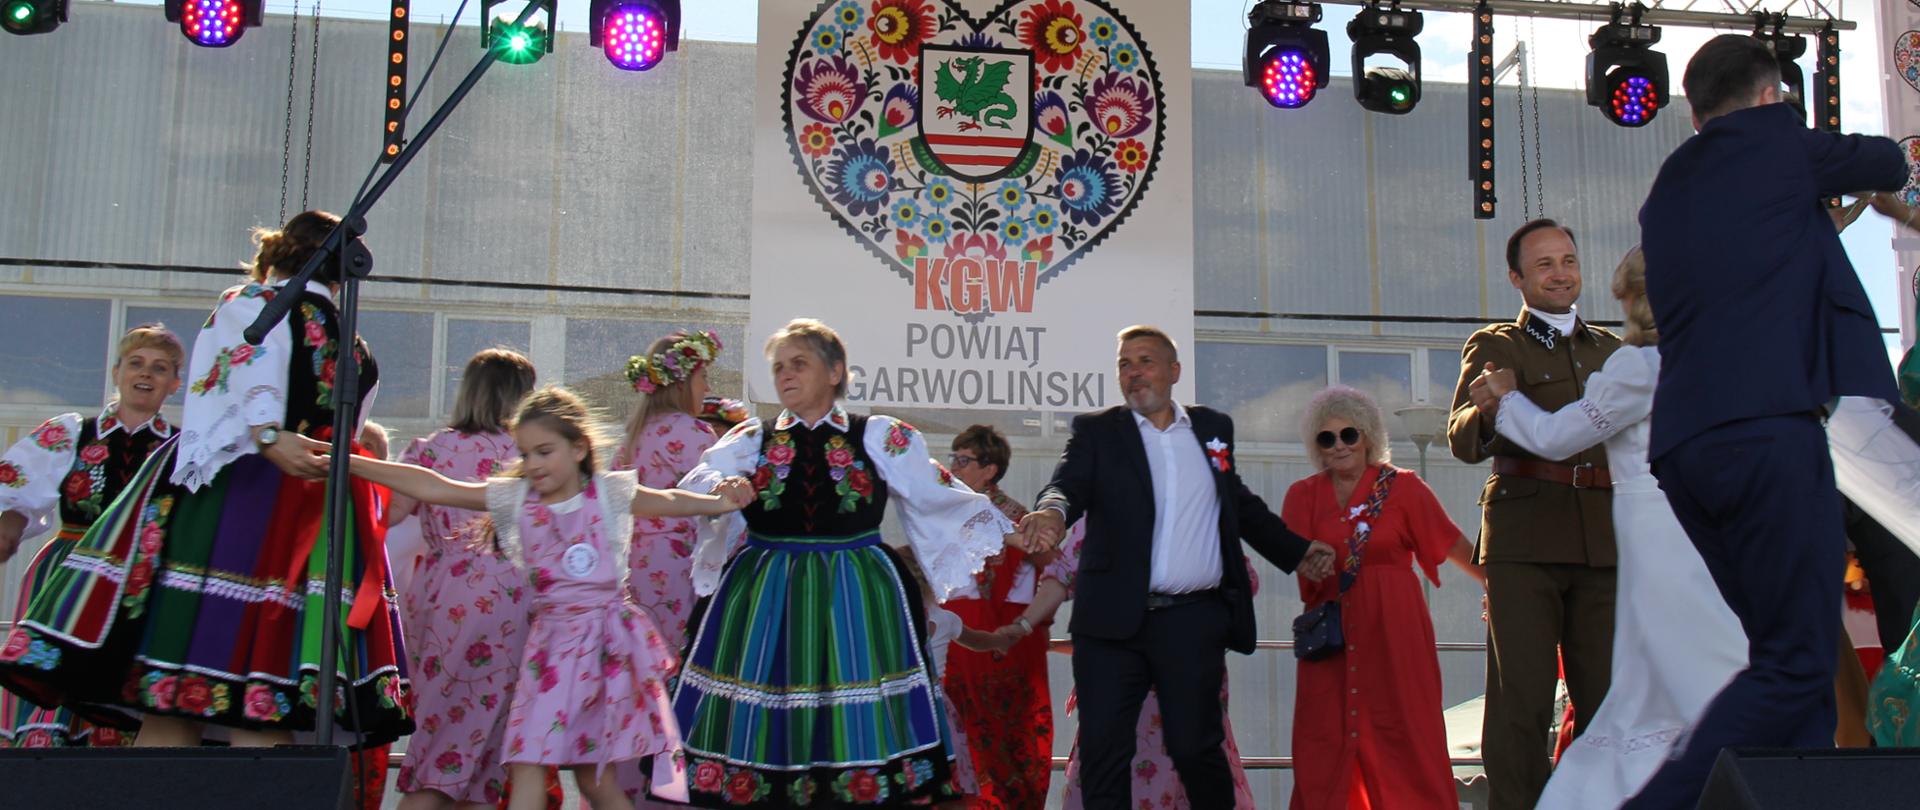 Przegląd muzyki ludowej w ramach Festiwalu Etnograficznego Powiatu Garwolińskiego, 7 sierpnia 2022 r. w Miętnem, fot. 2